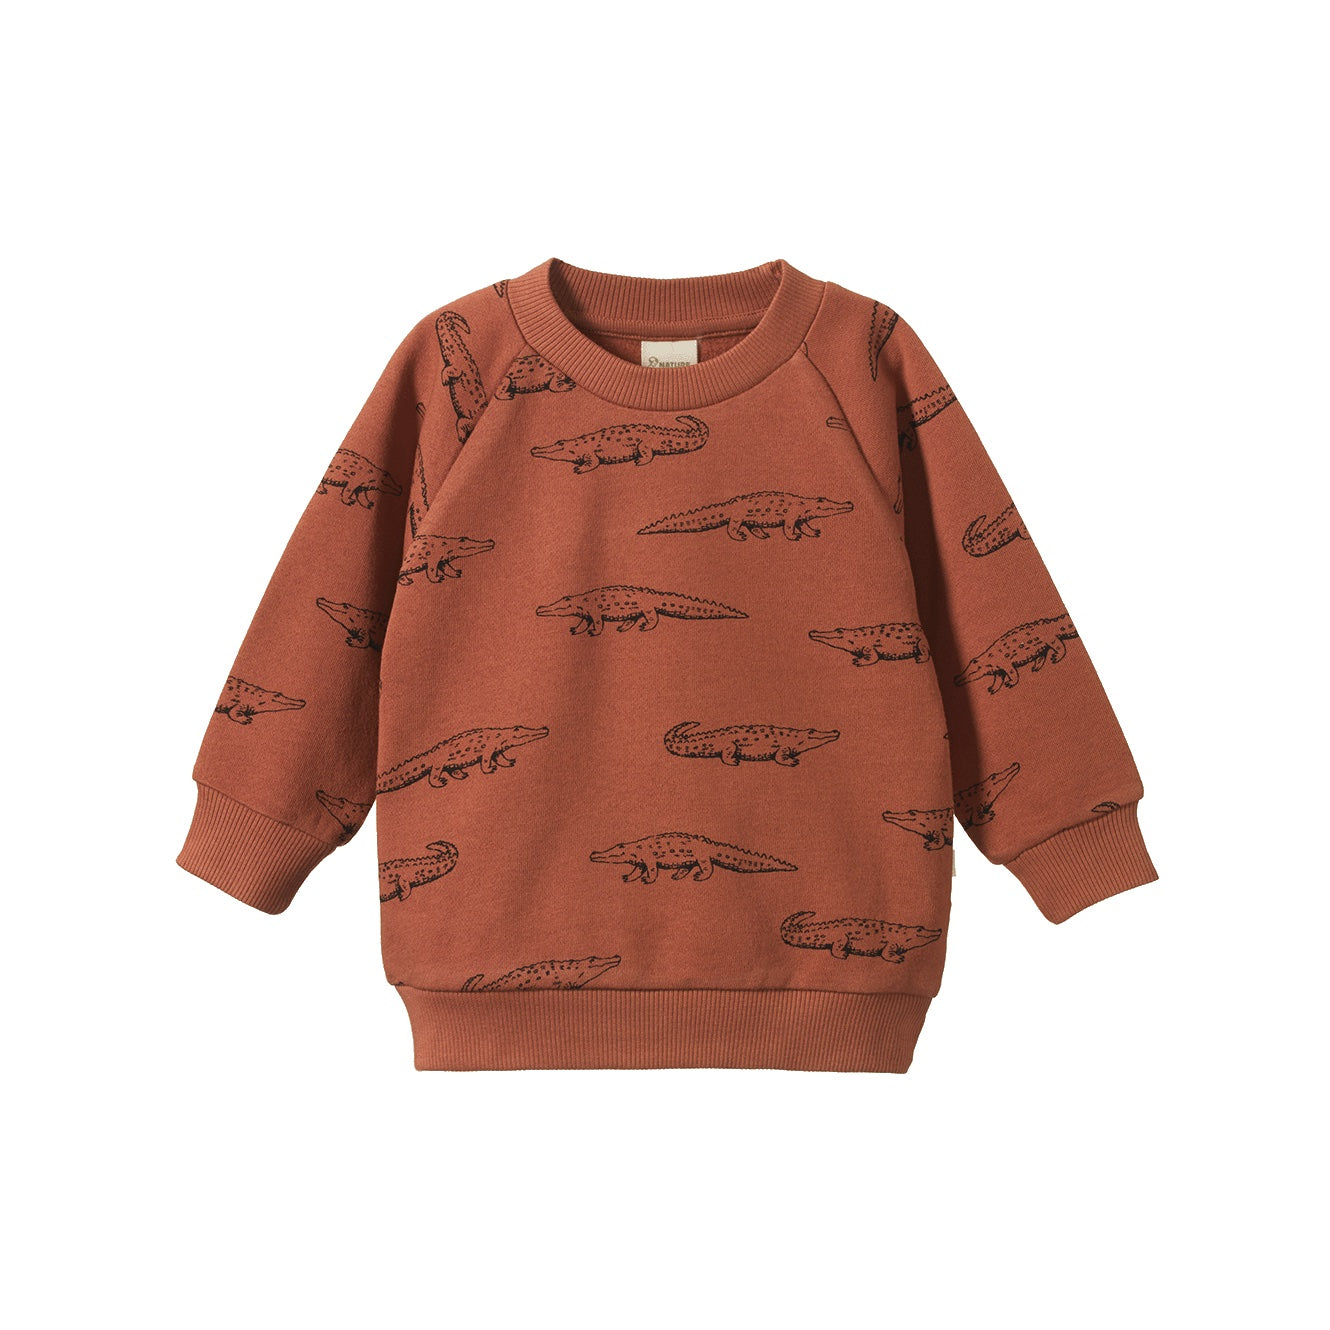 Emerson Sweater / Crocodile